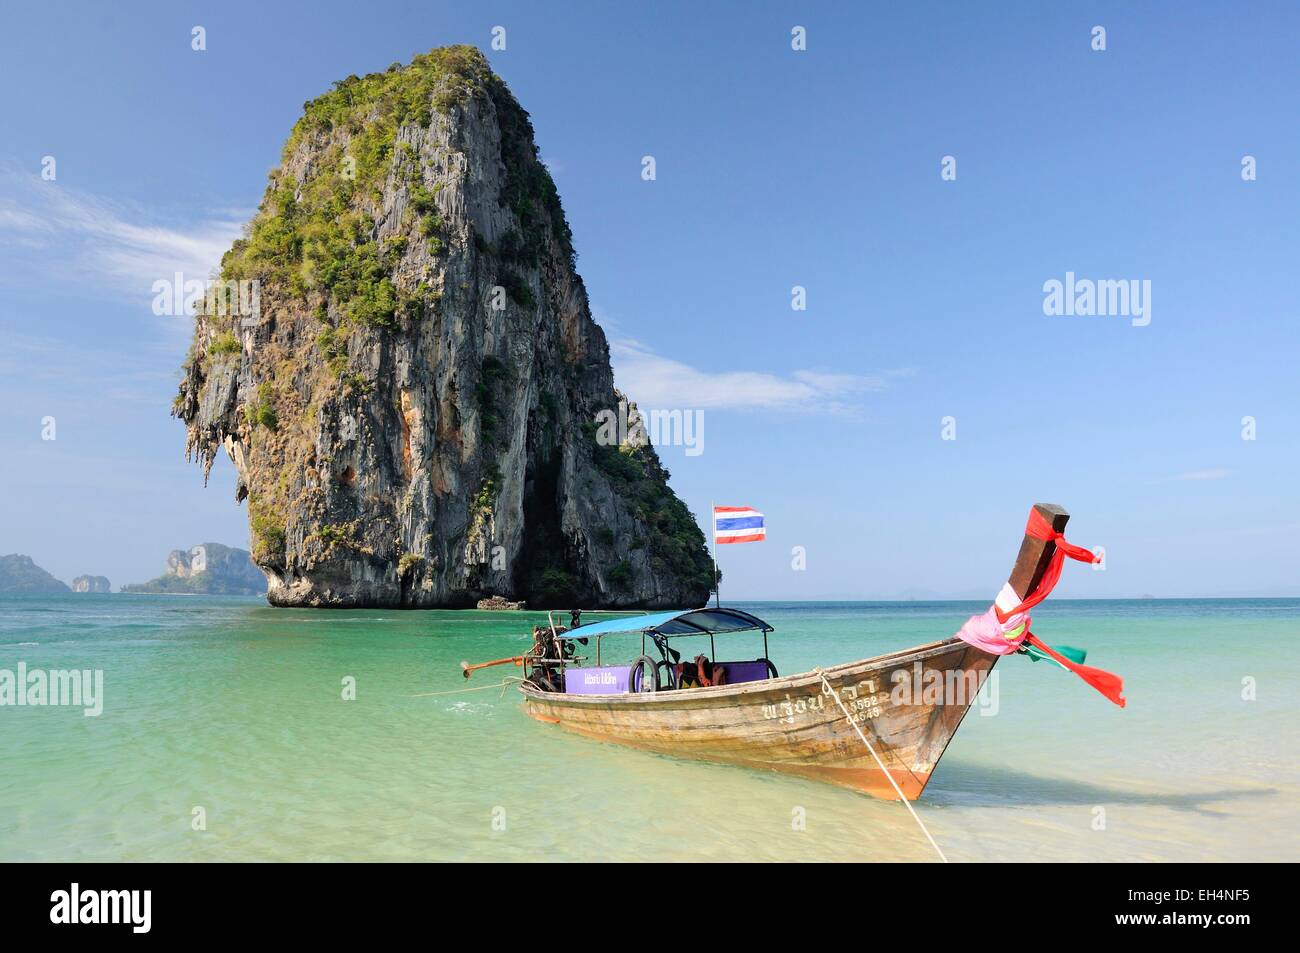 La Thaïlande, Krabi, Railay, Hat Phra Nang, une eau cristalline, bateau "long tail et karsts calcaire vue de la magnifique plage de Phra Nang Railay Banque D'Images